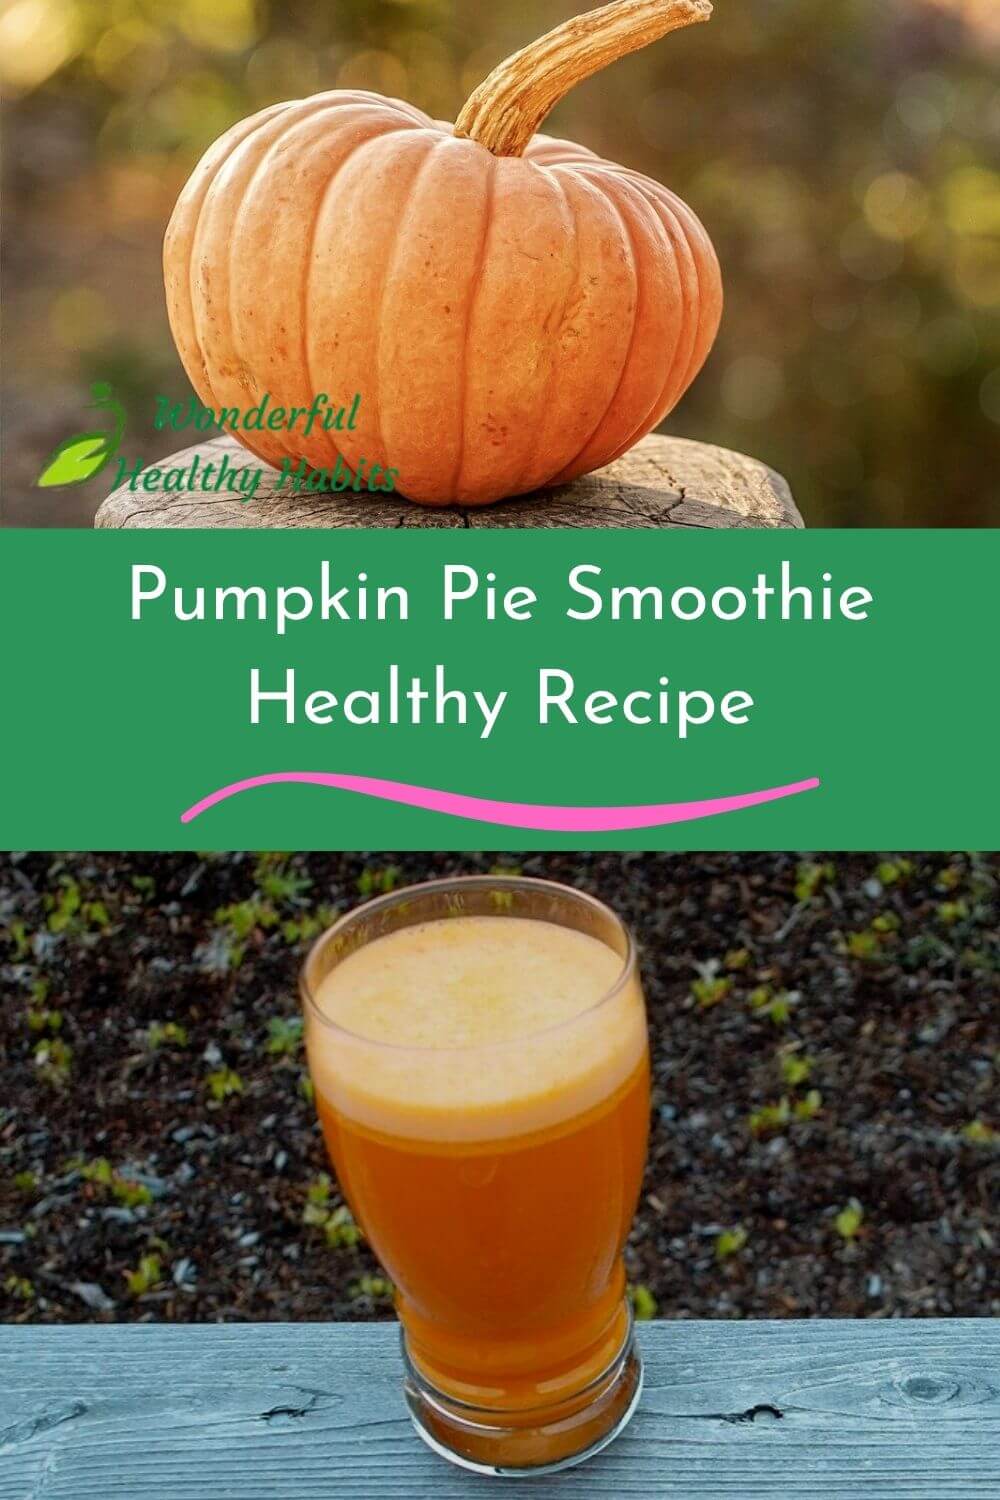 Pumpkin Pie Smoothie Healthy Recipe